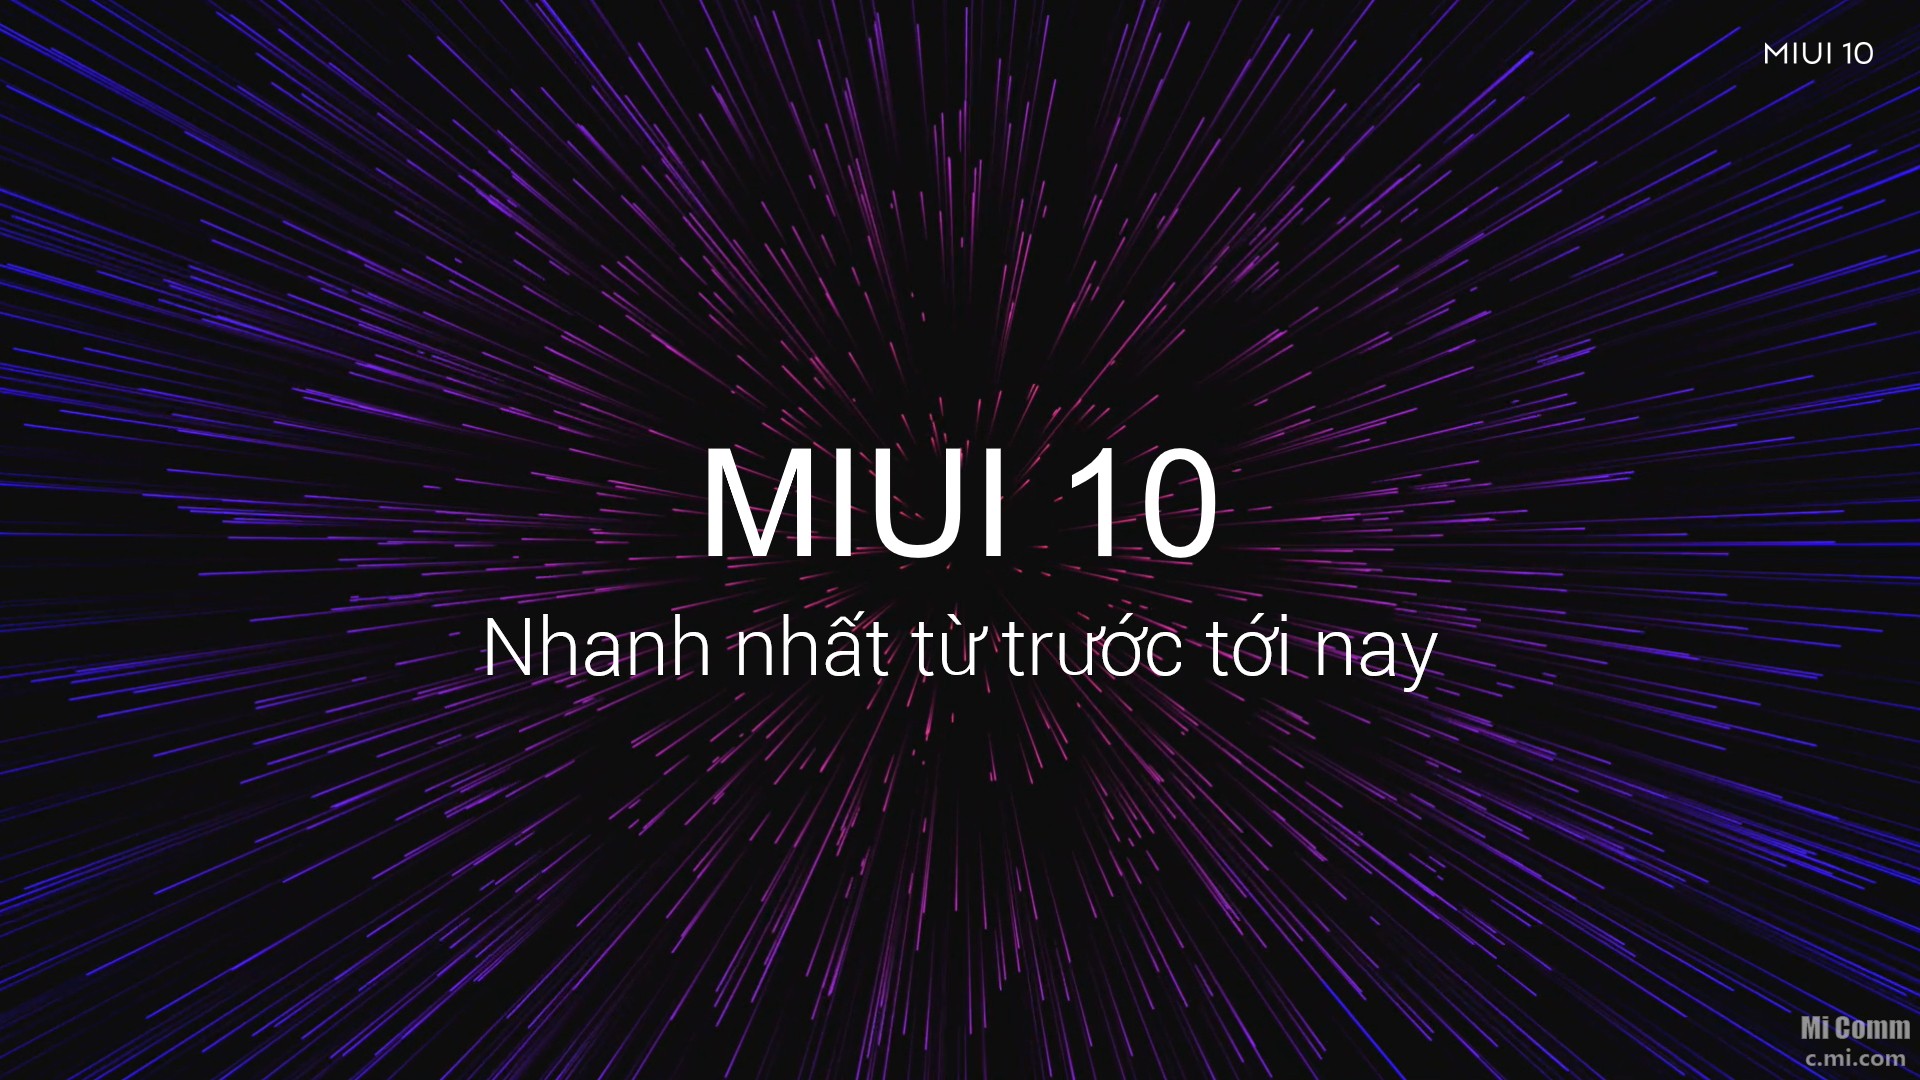 MIUI 10 Global chính thức ra mắt: Tất cả thông tin bạn cần biết